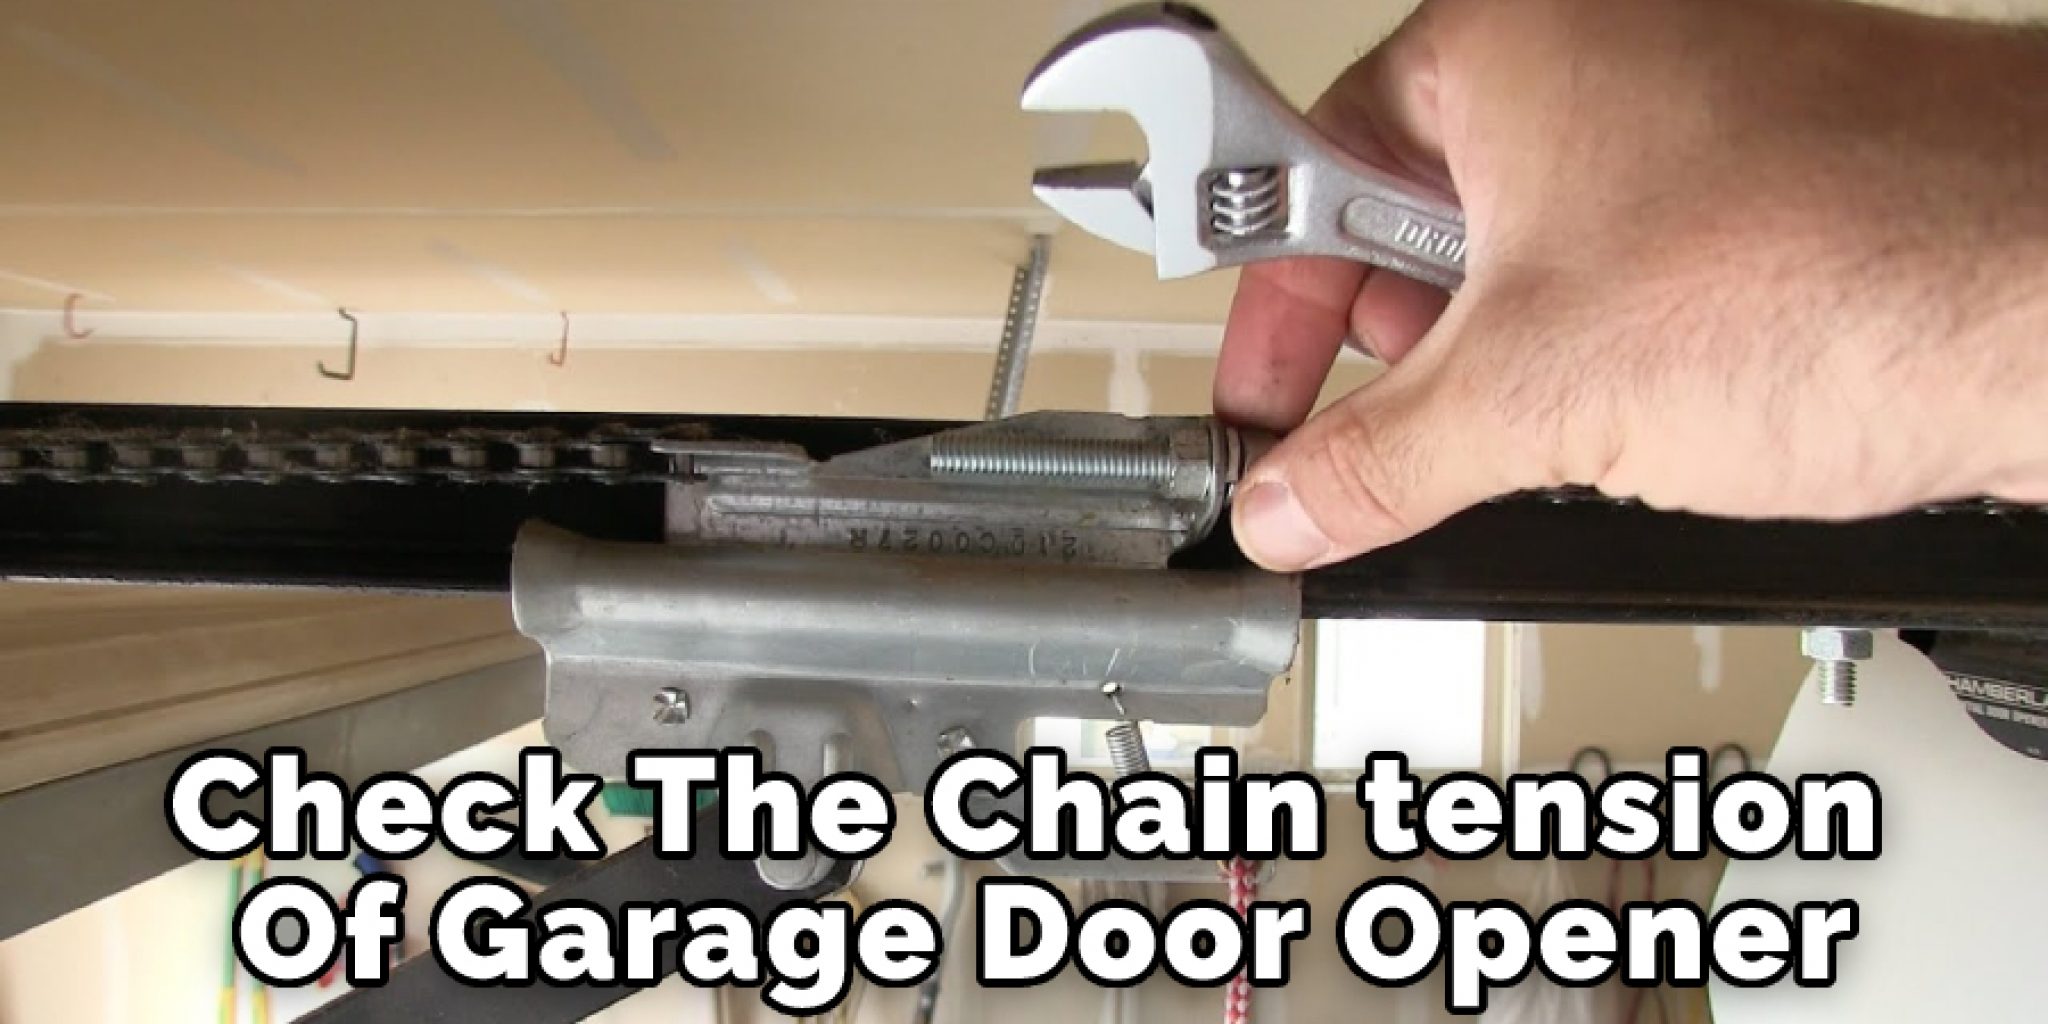 Creative Garage Door Adjustment Tools for Small Space